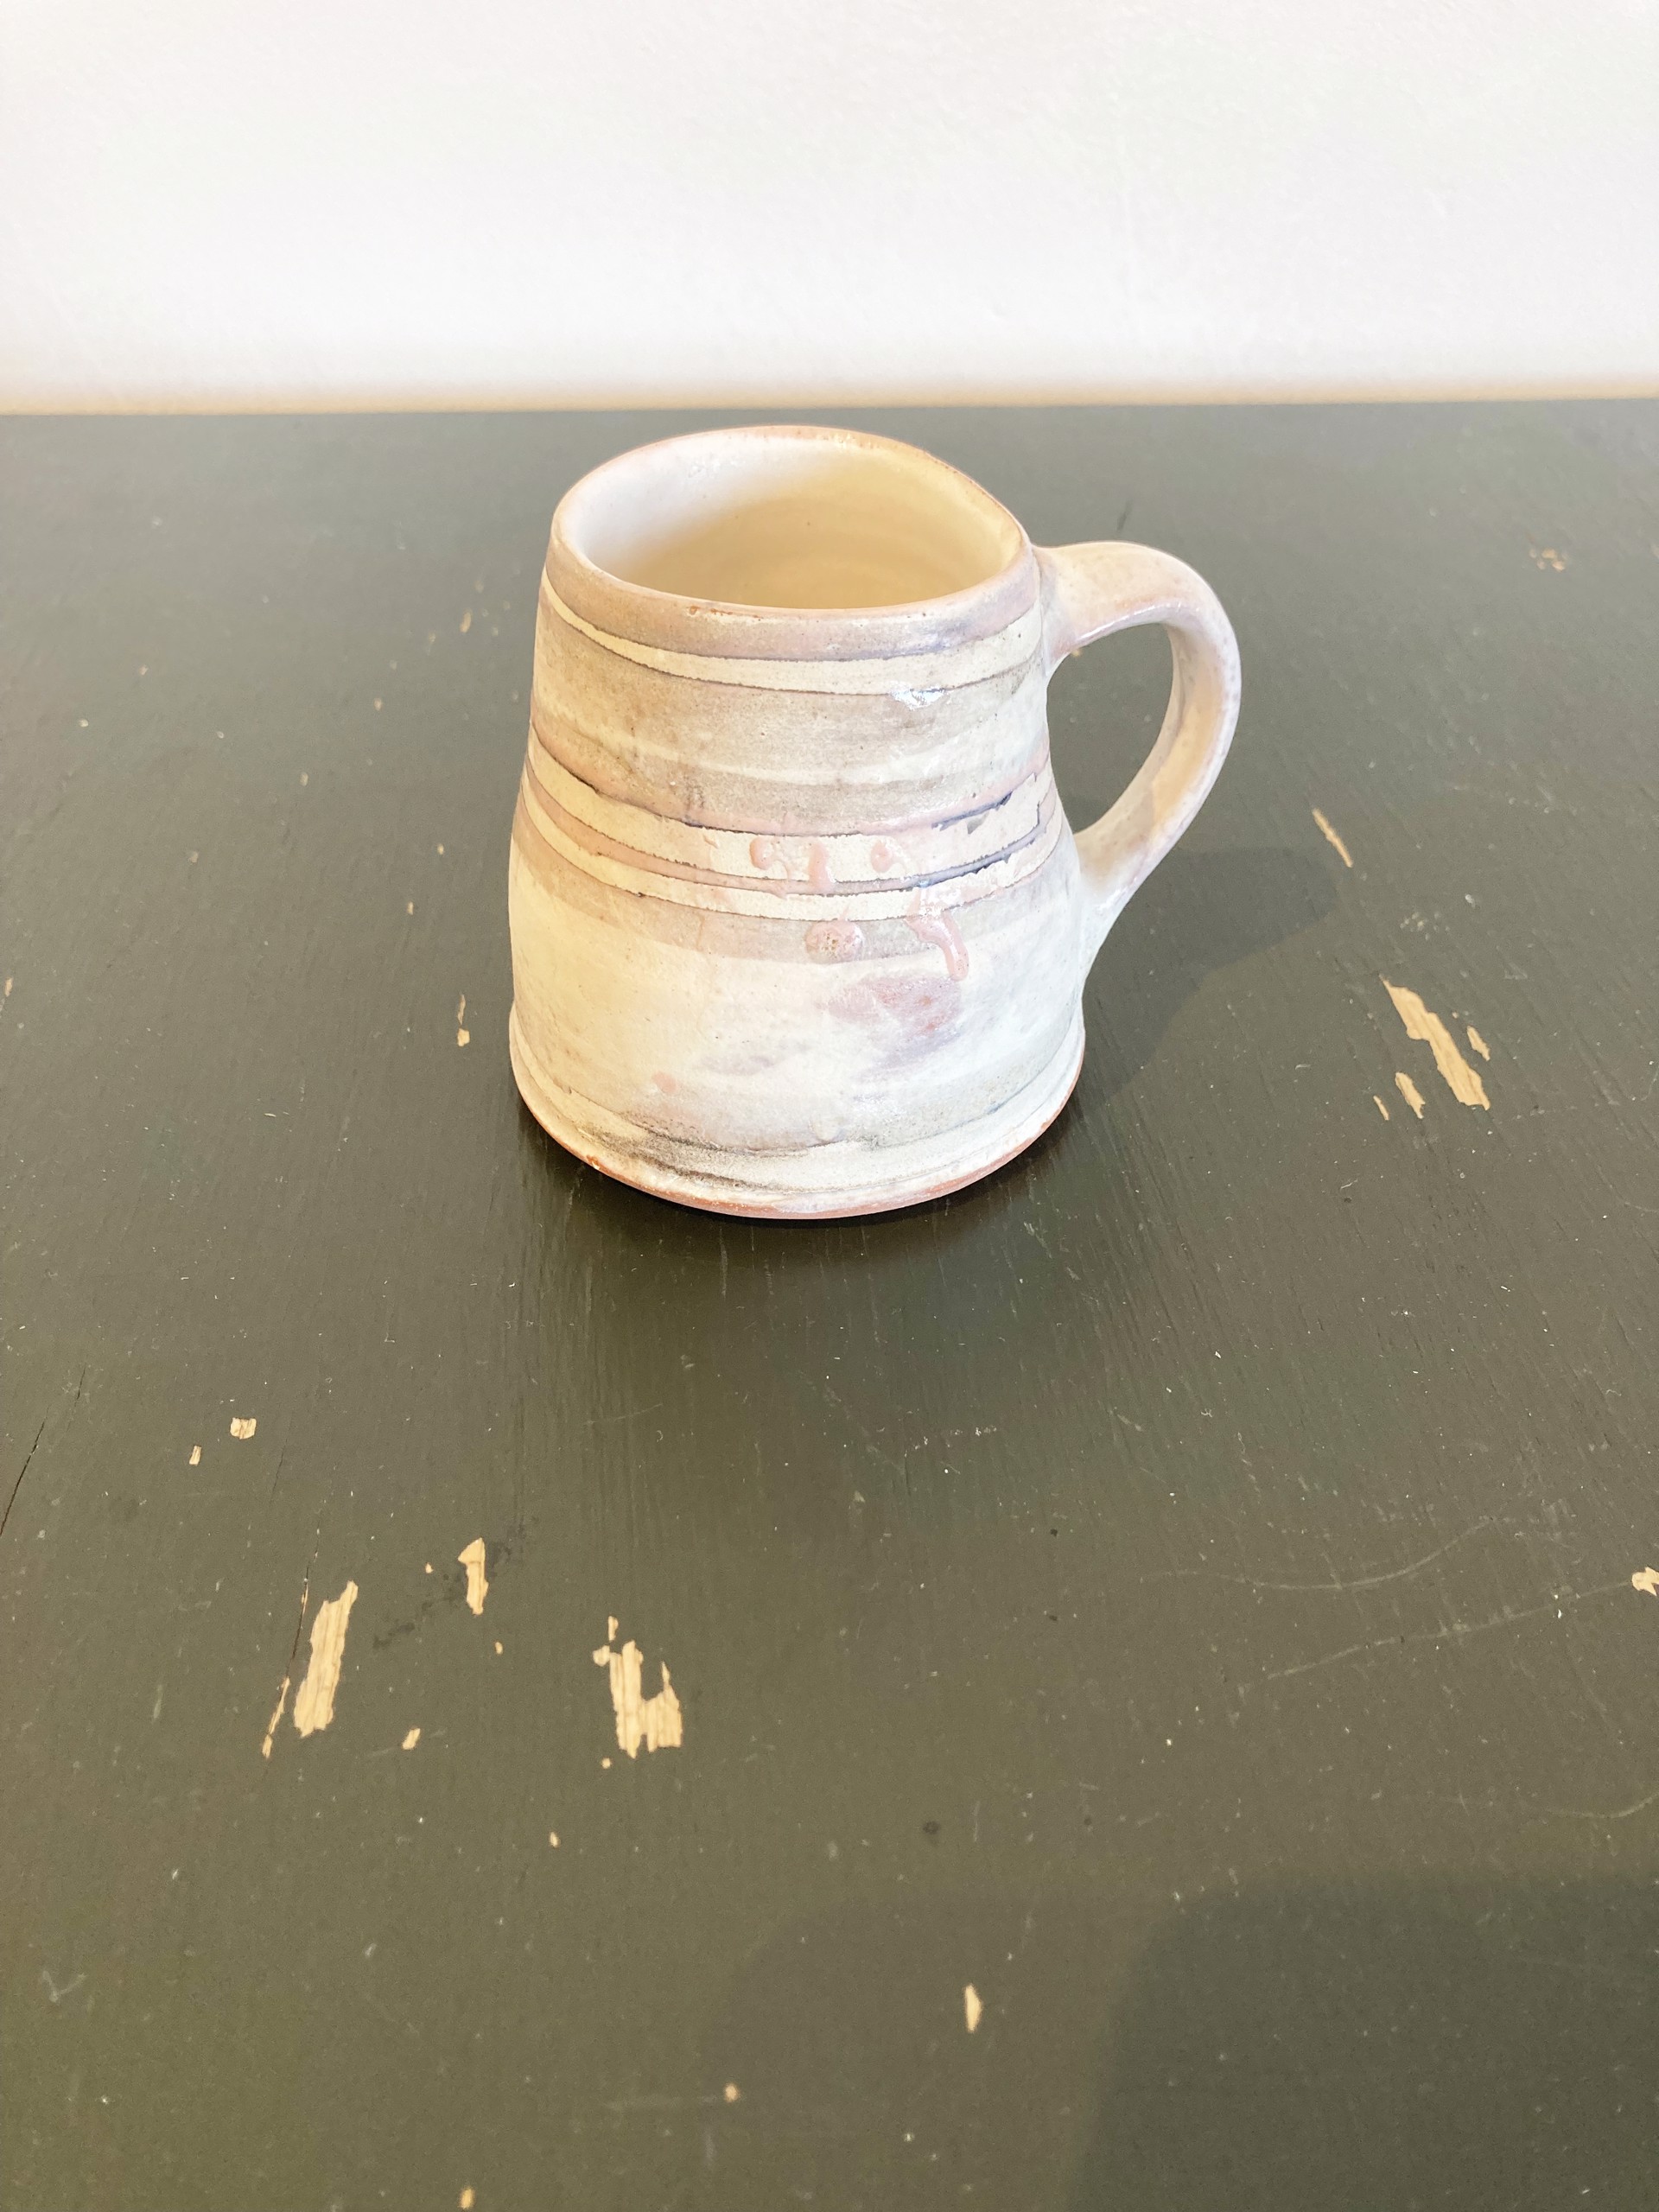 Small mug by Maggie Jaszczak